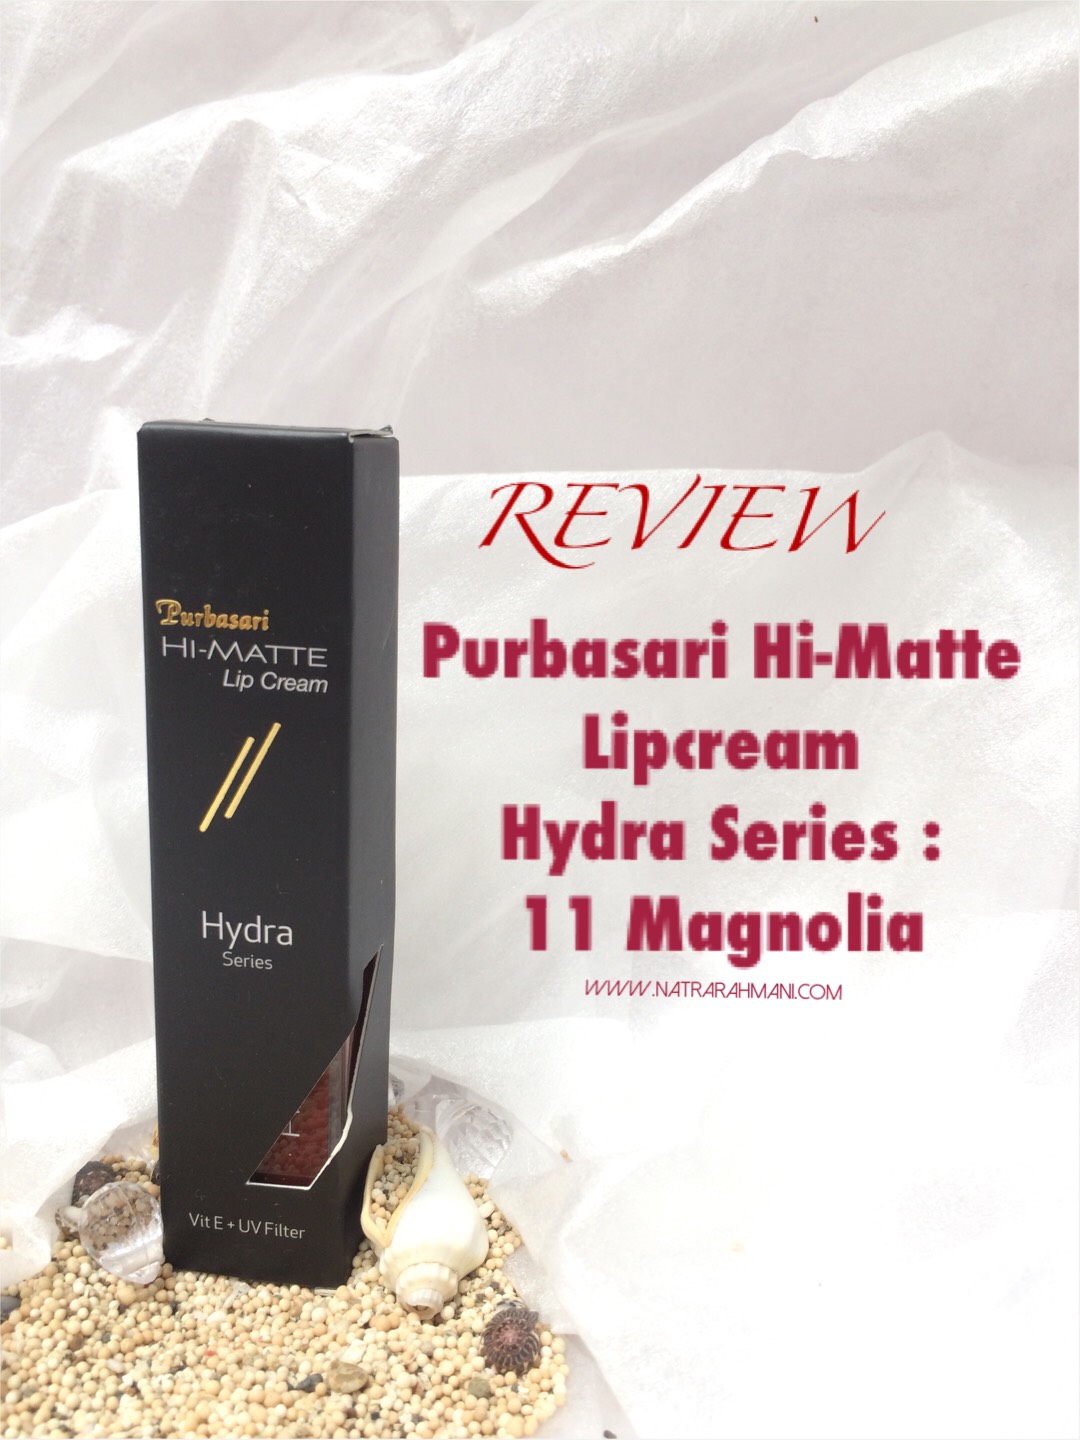 review-purbasari-hi-matte-lipcream-hydra-series-magnolia-natrarahmani